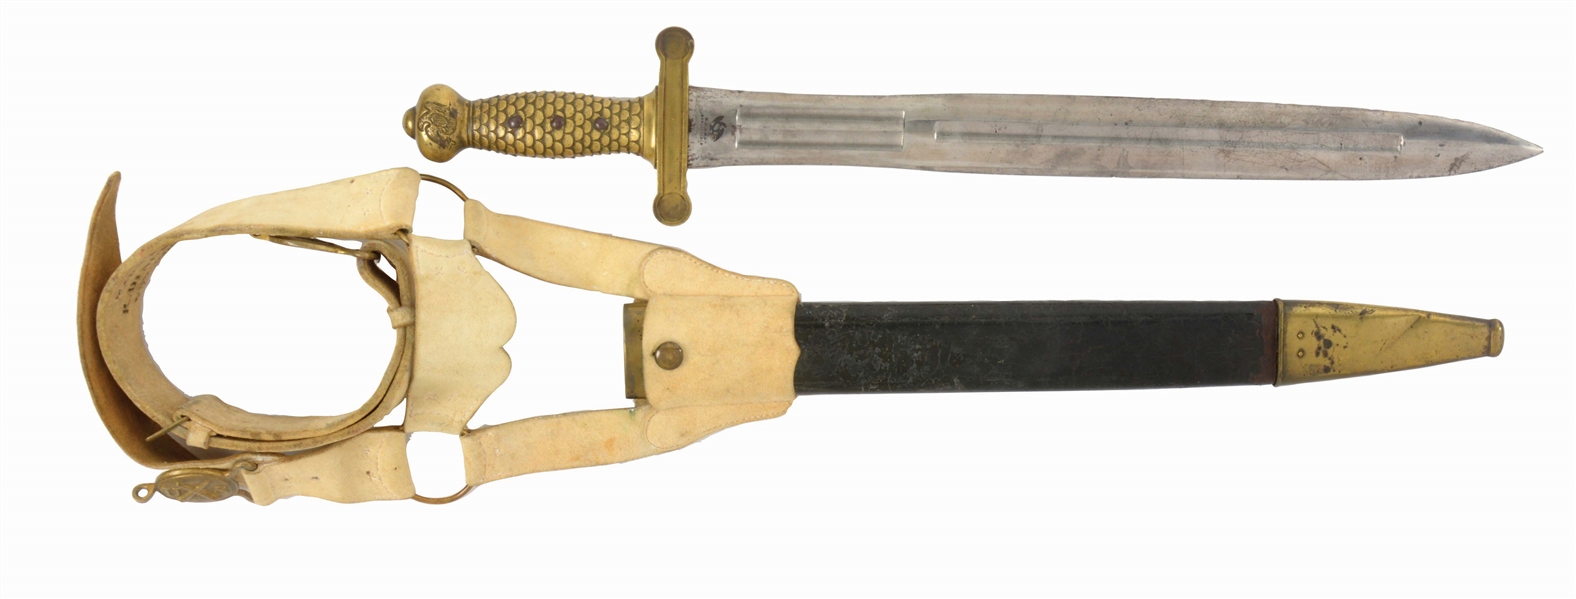 AMES FOOT ARTILLERY SWORD MODEL 1832, HUSE HILT, DINGEE MARKED BELT